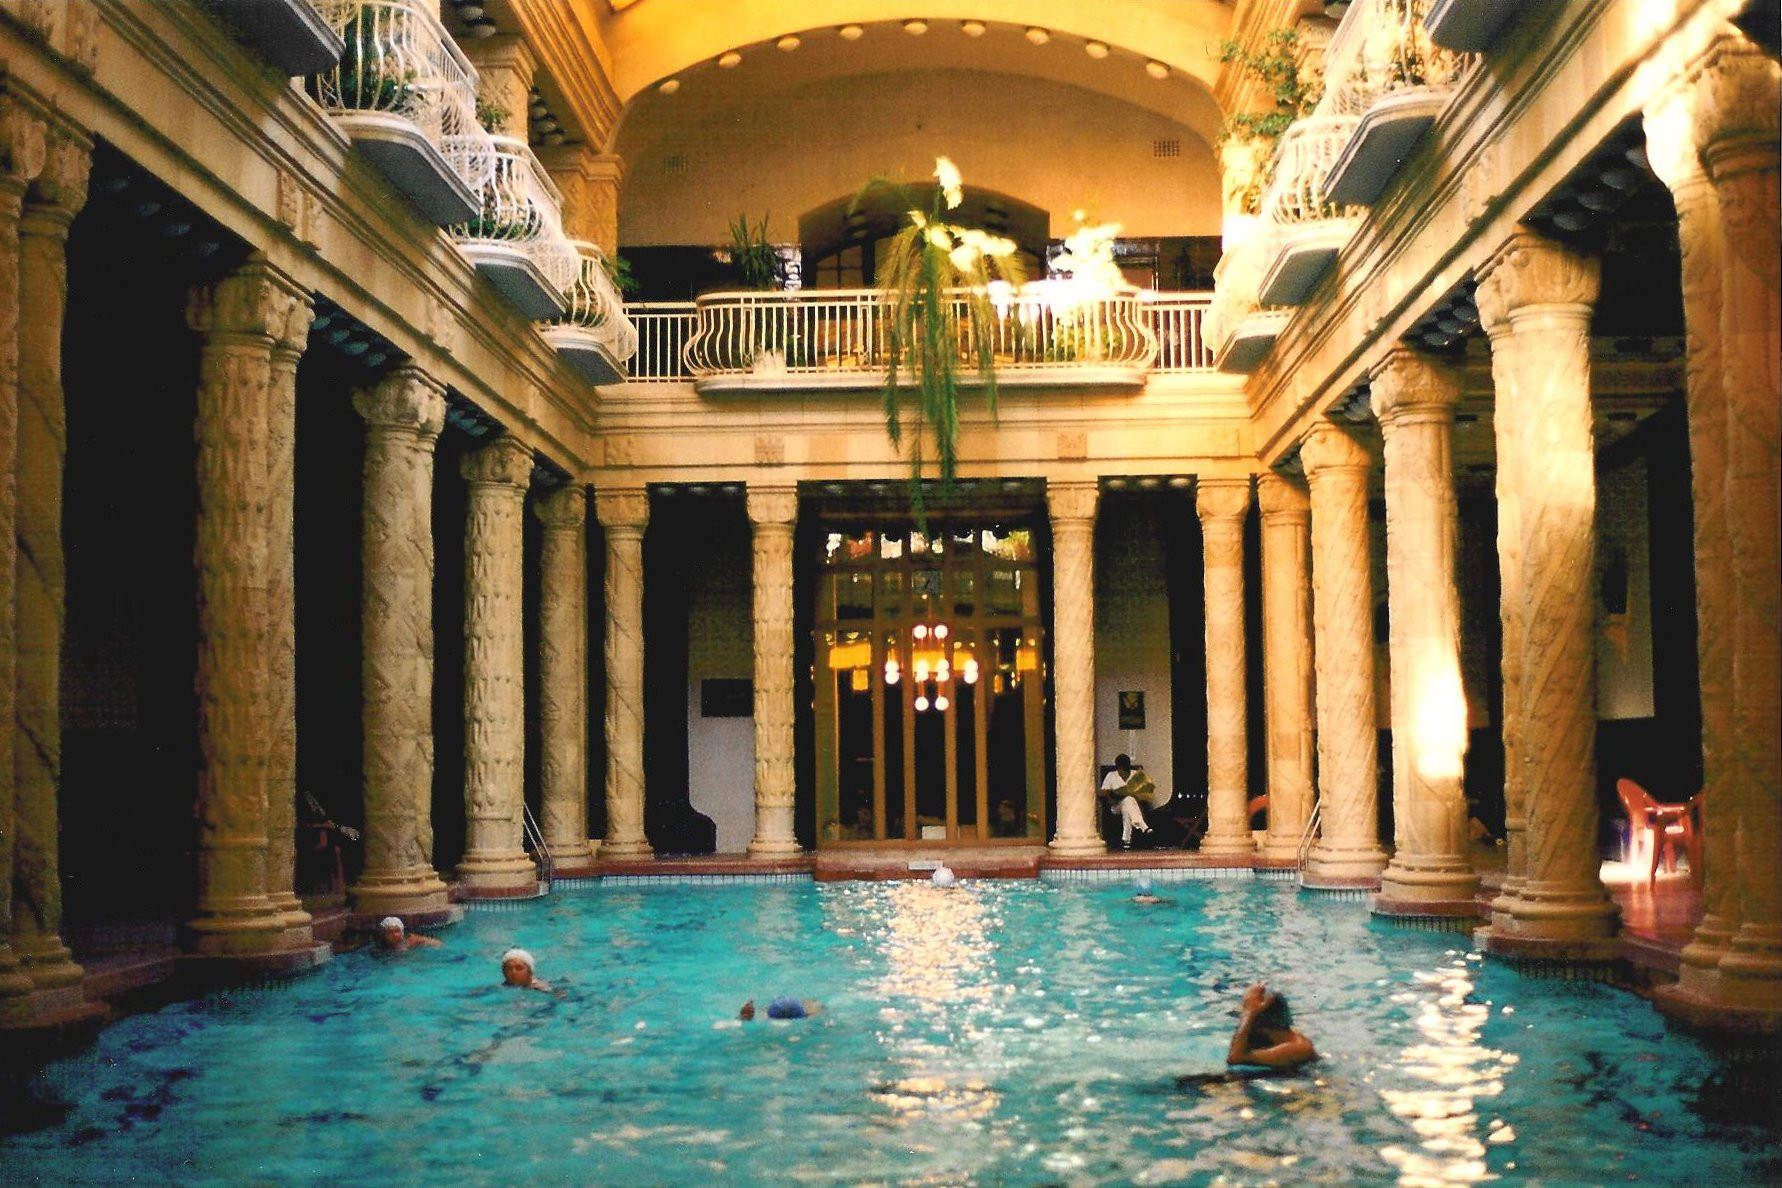 Na druhej strane Dunaja, hneď za Mostom Slobody  (Szabadság híd) najdete Hotel Gellért a v ňom rovnomenné kúpele. Sú otvorené už viac ako sto rokov.

Uchvátia vás secesným interiérom. Keď sa ponoríte do hlavnému bazénu pod dekoratívnymi stĺpmi a presklenou strechou, budete si pripadať ako by ste plávali v katedrále. 

Voda v piatich termálnych bazénoch má 19 až 40 stupňov. Vnútorný bazén má umelé vlnobitie. Odporúčame opaľovať sa na priestrannej terase, z ktorej môžete v pokoji pozorovať davy turistov, ktorí stúpajú na budapeštiansku Citadelu. 

Možno ste to nevedeli, ale v kúpeľoch Gellért nakrúcal Jan Svěrák svoj film Akumulátor I. 